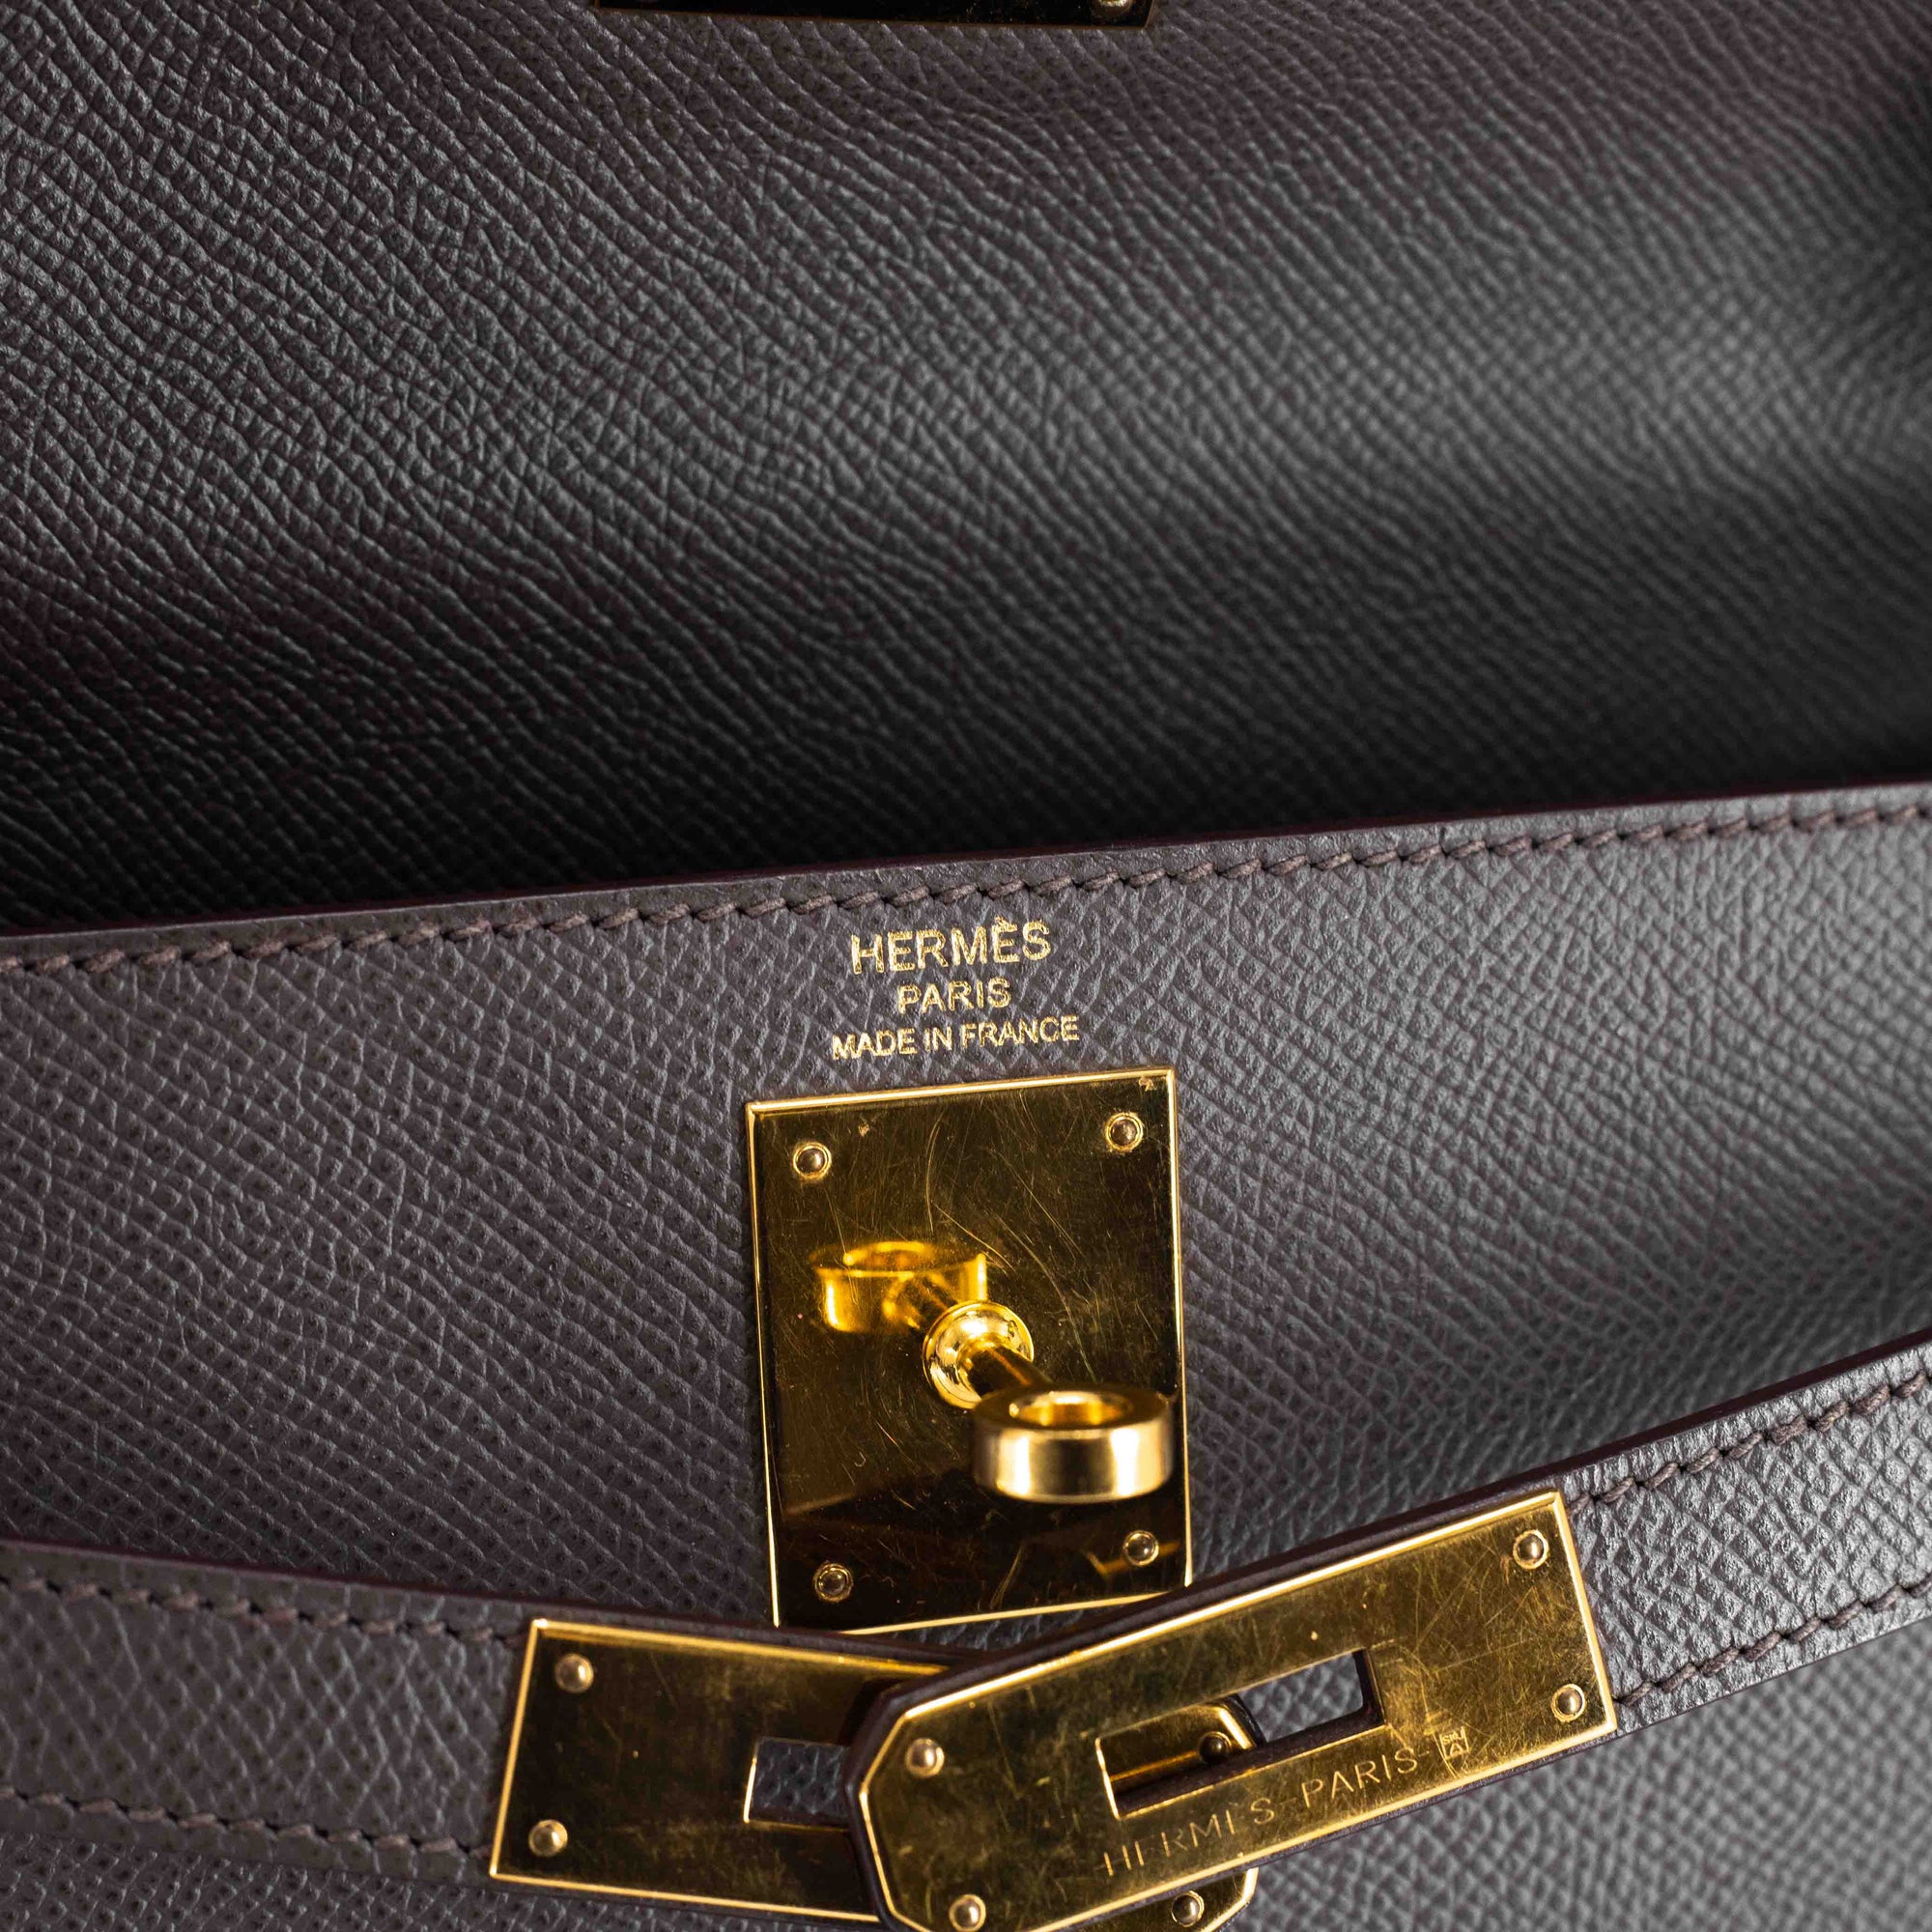 Hermes Etain Epsom Leather Gold Hardware Kelly Sellier 28 Bag Hermes